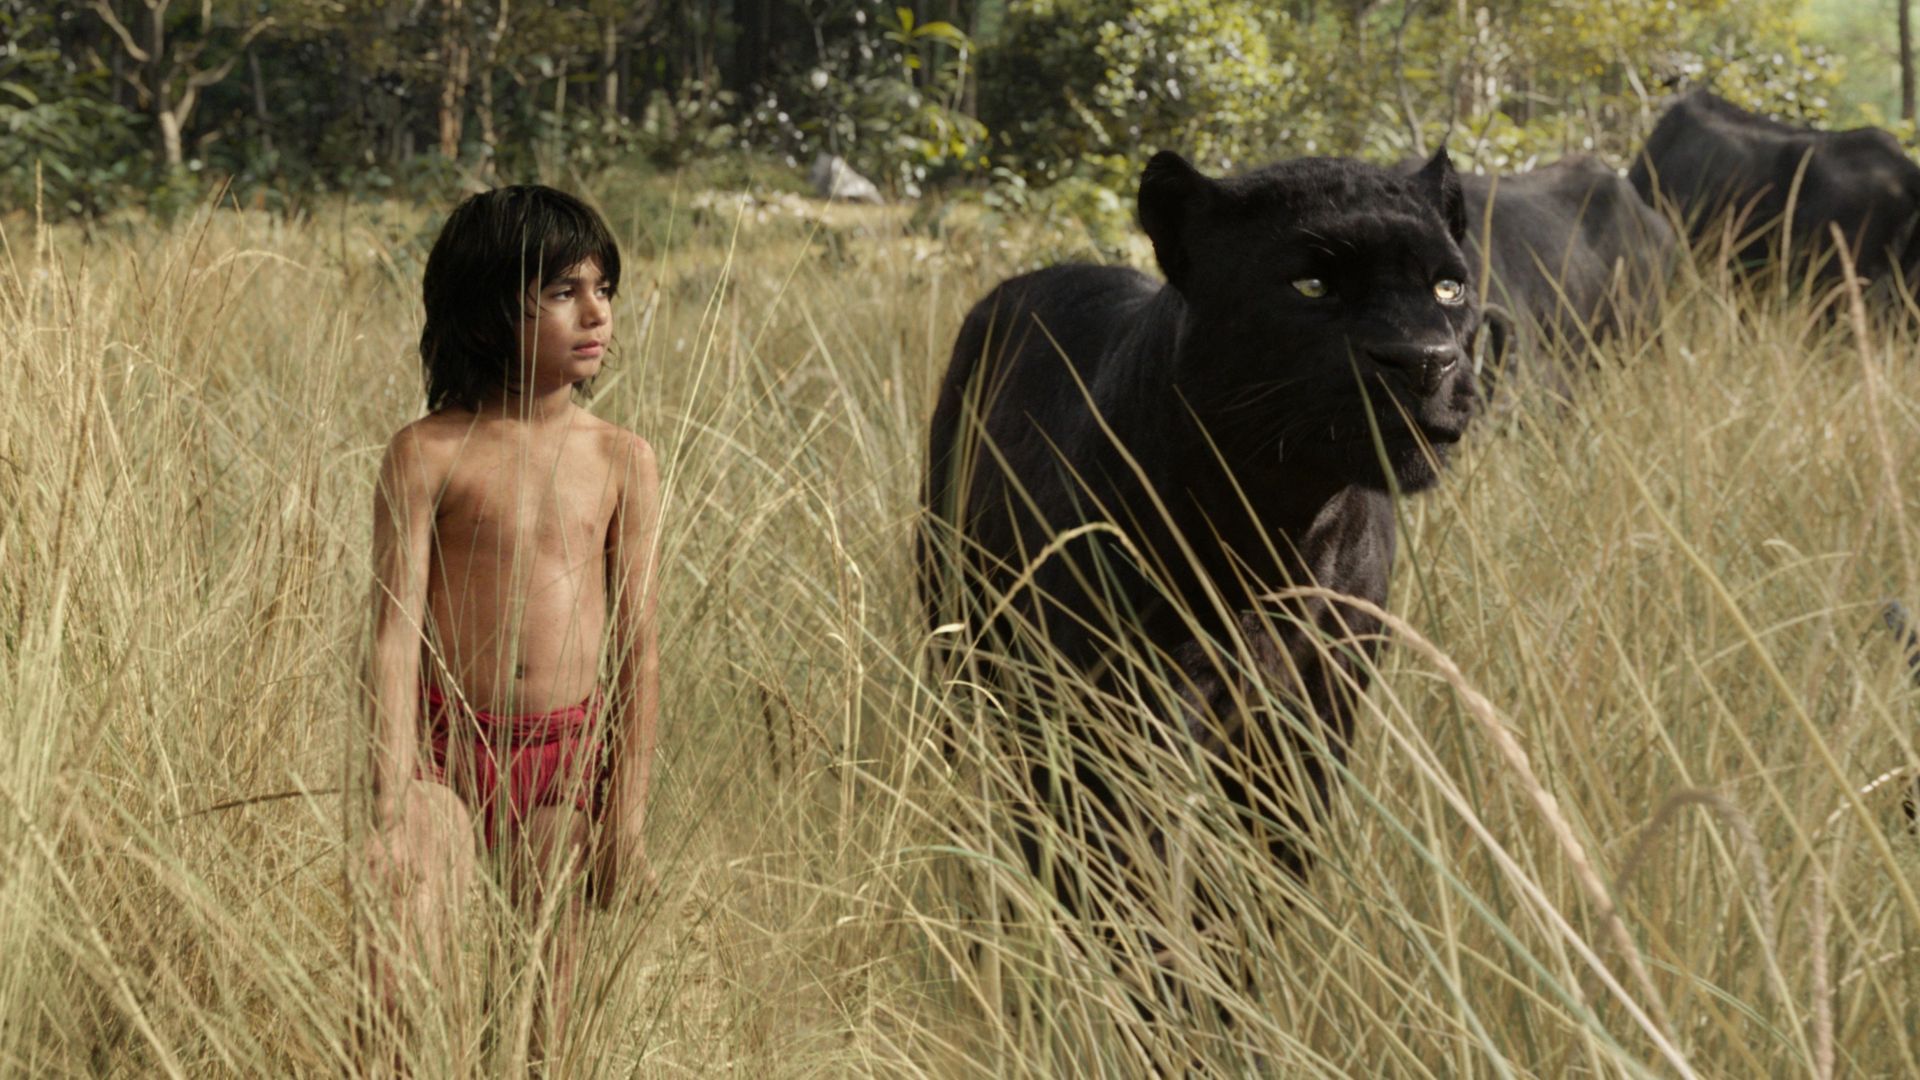 The Jungle Book 2 release date, cast, plot